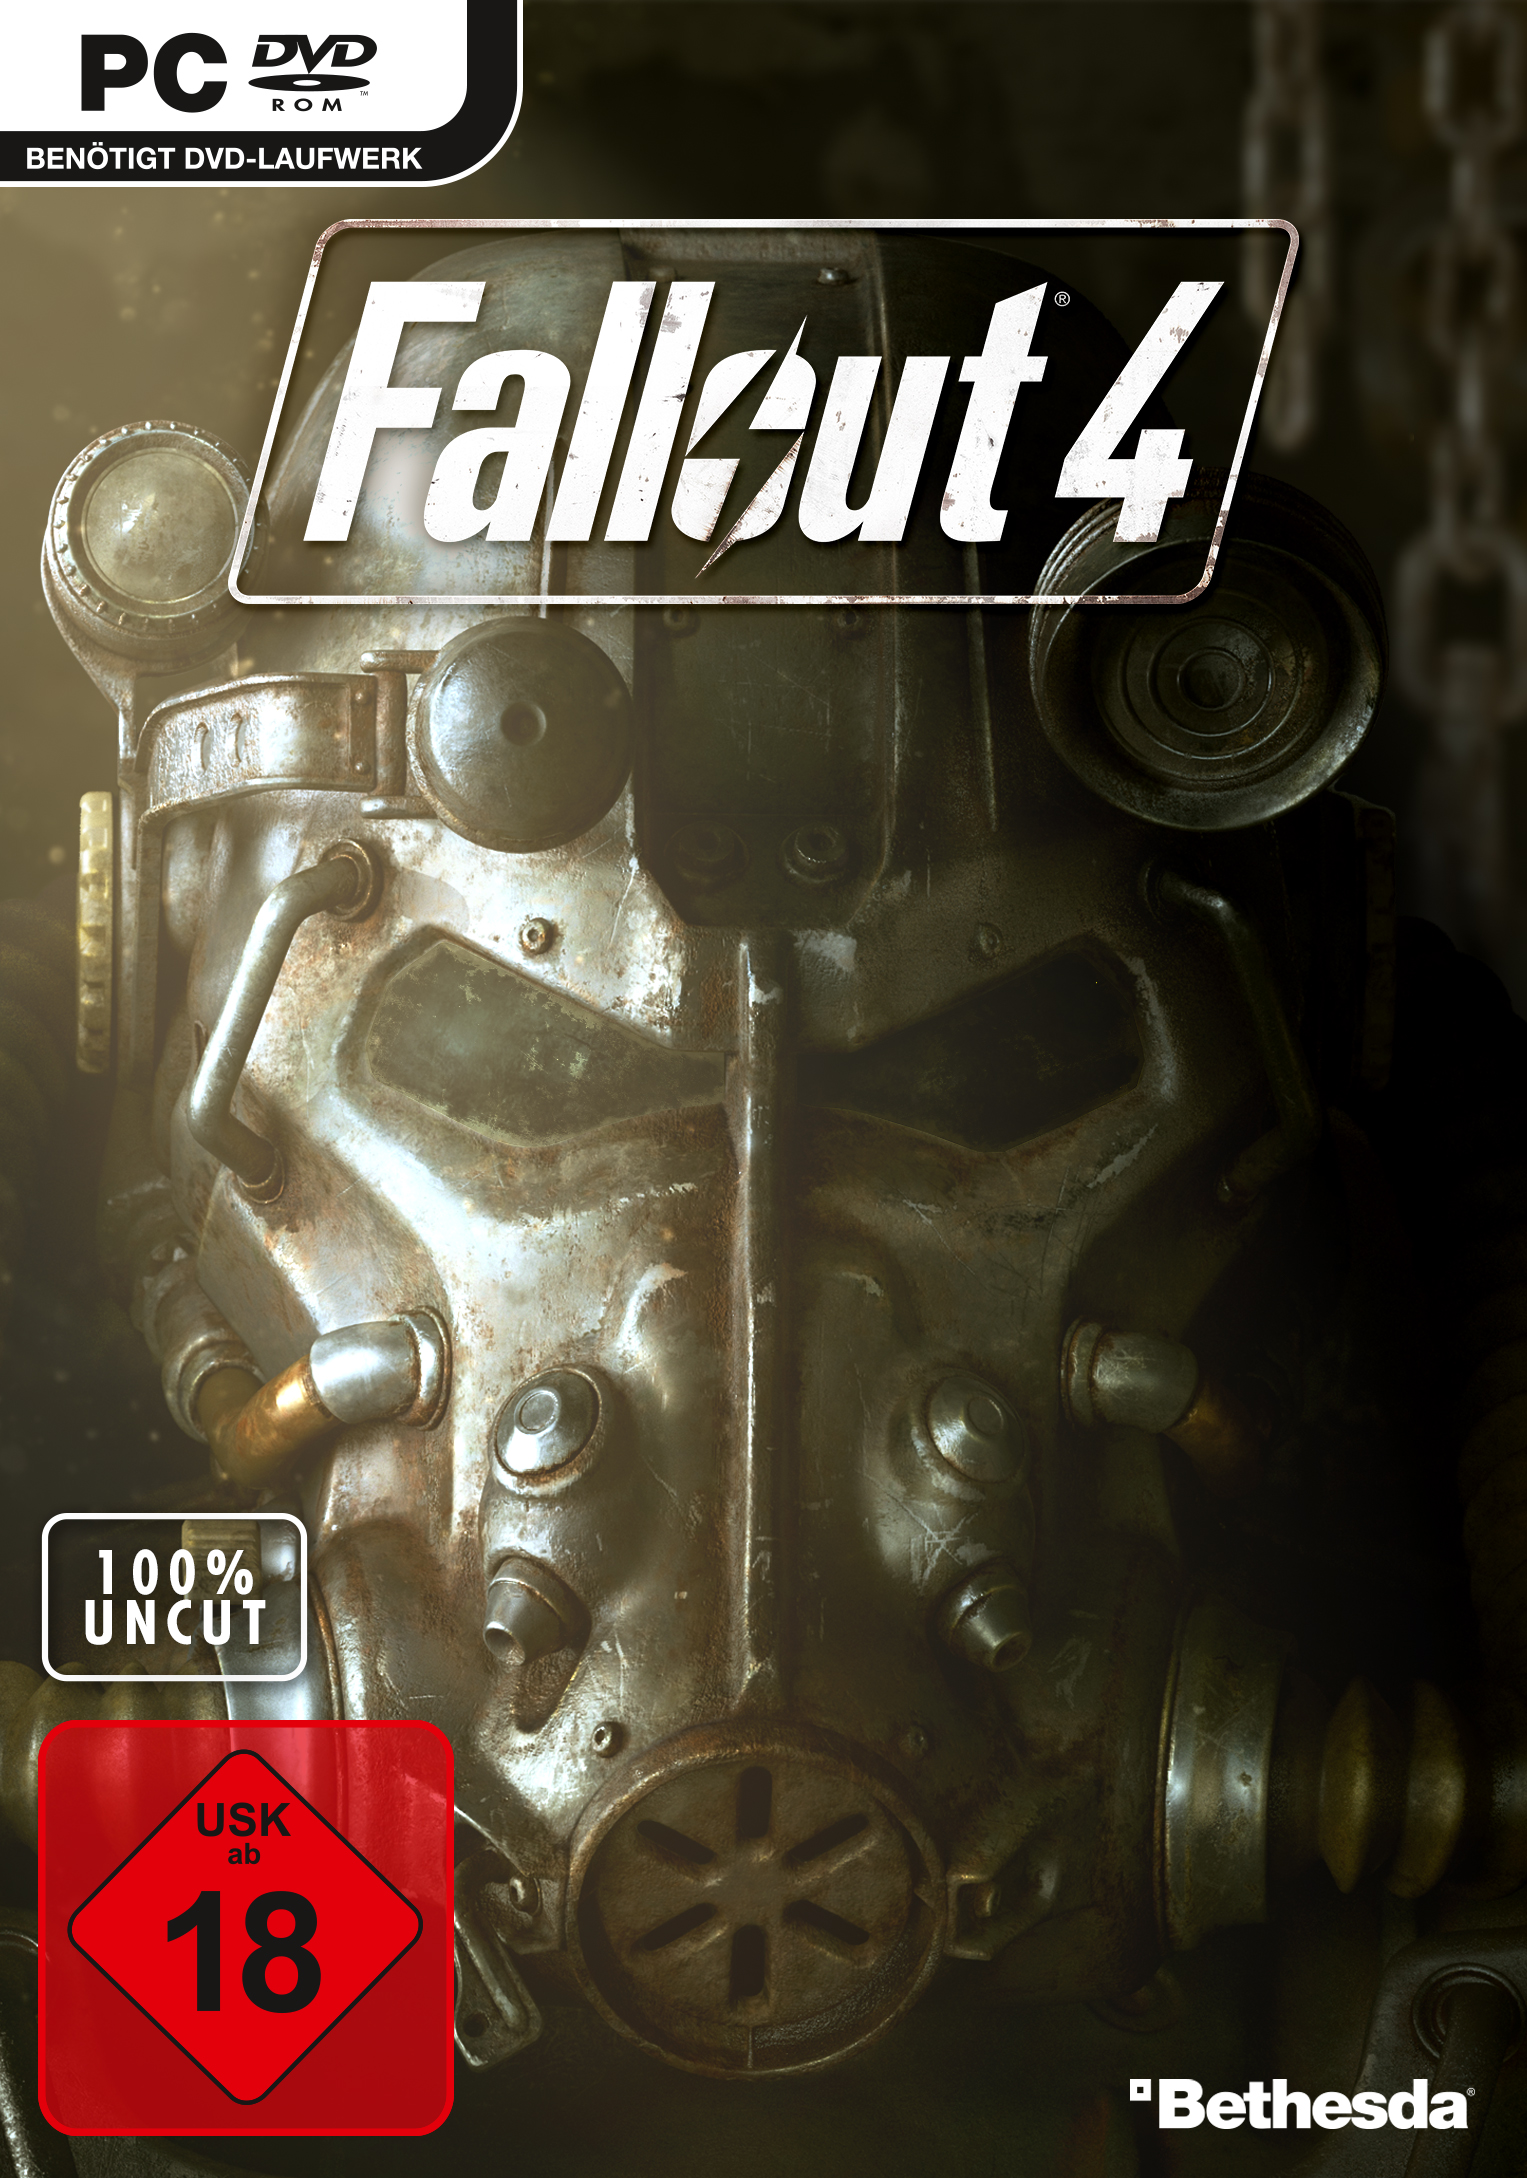 Cheat fallout verbessern 4 beziehung Fallout 4: